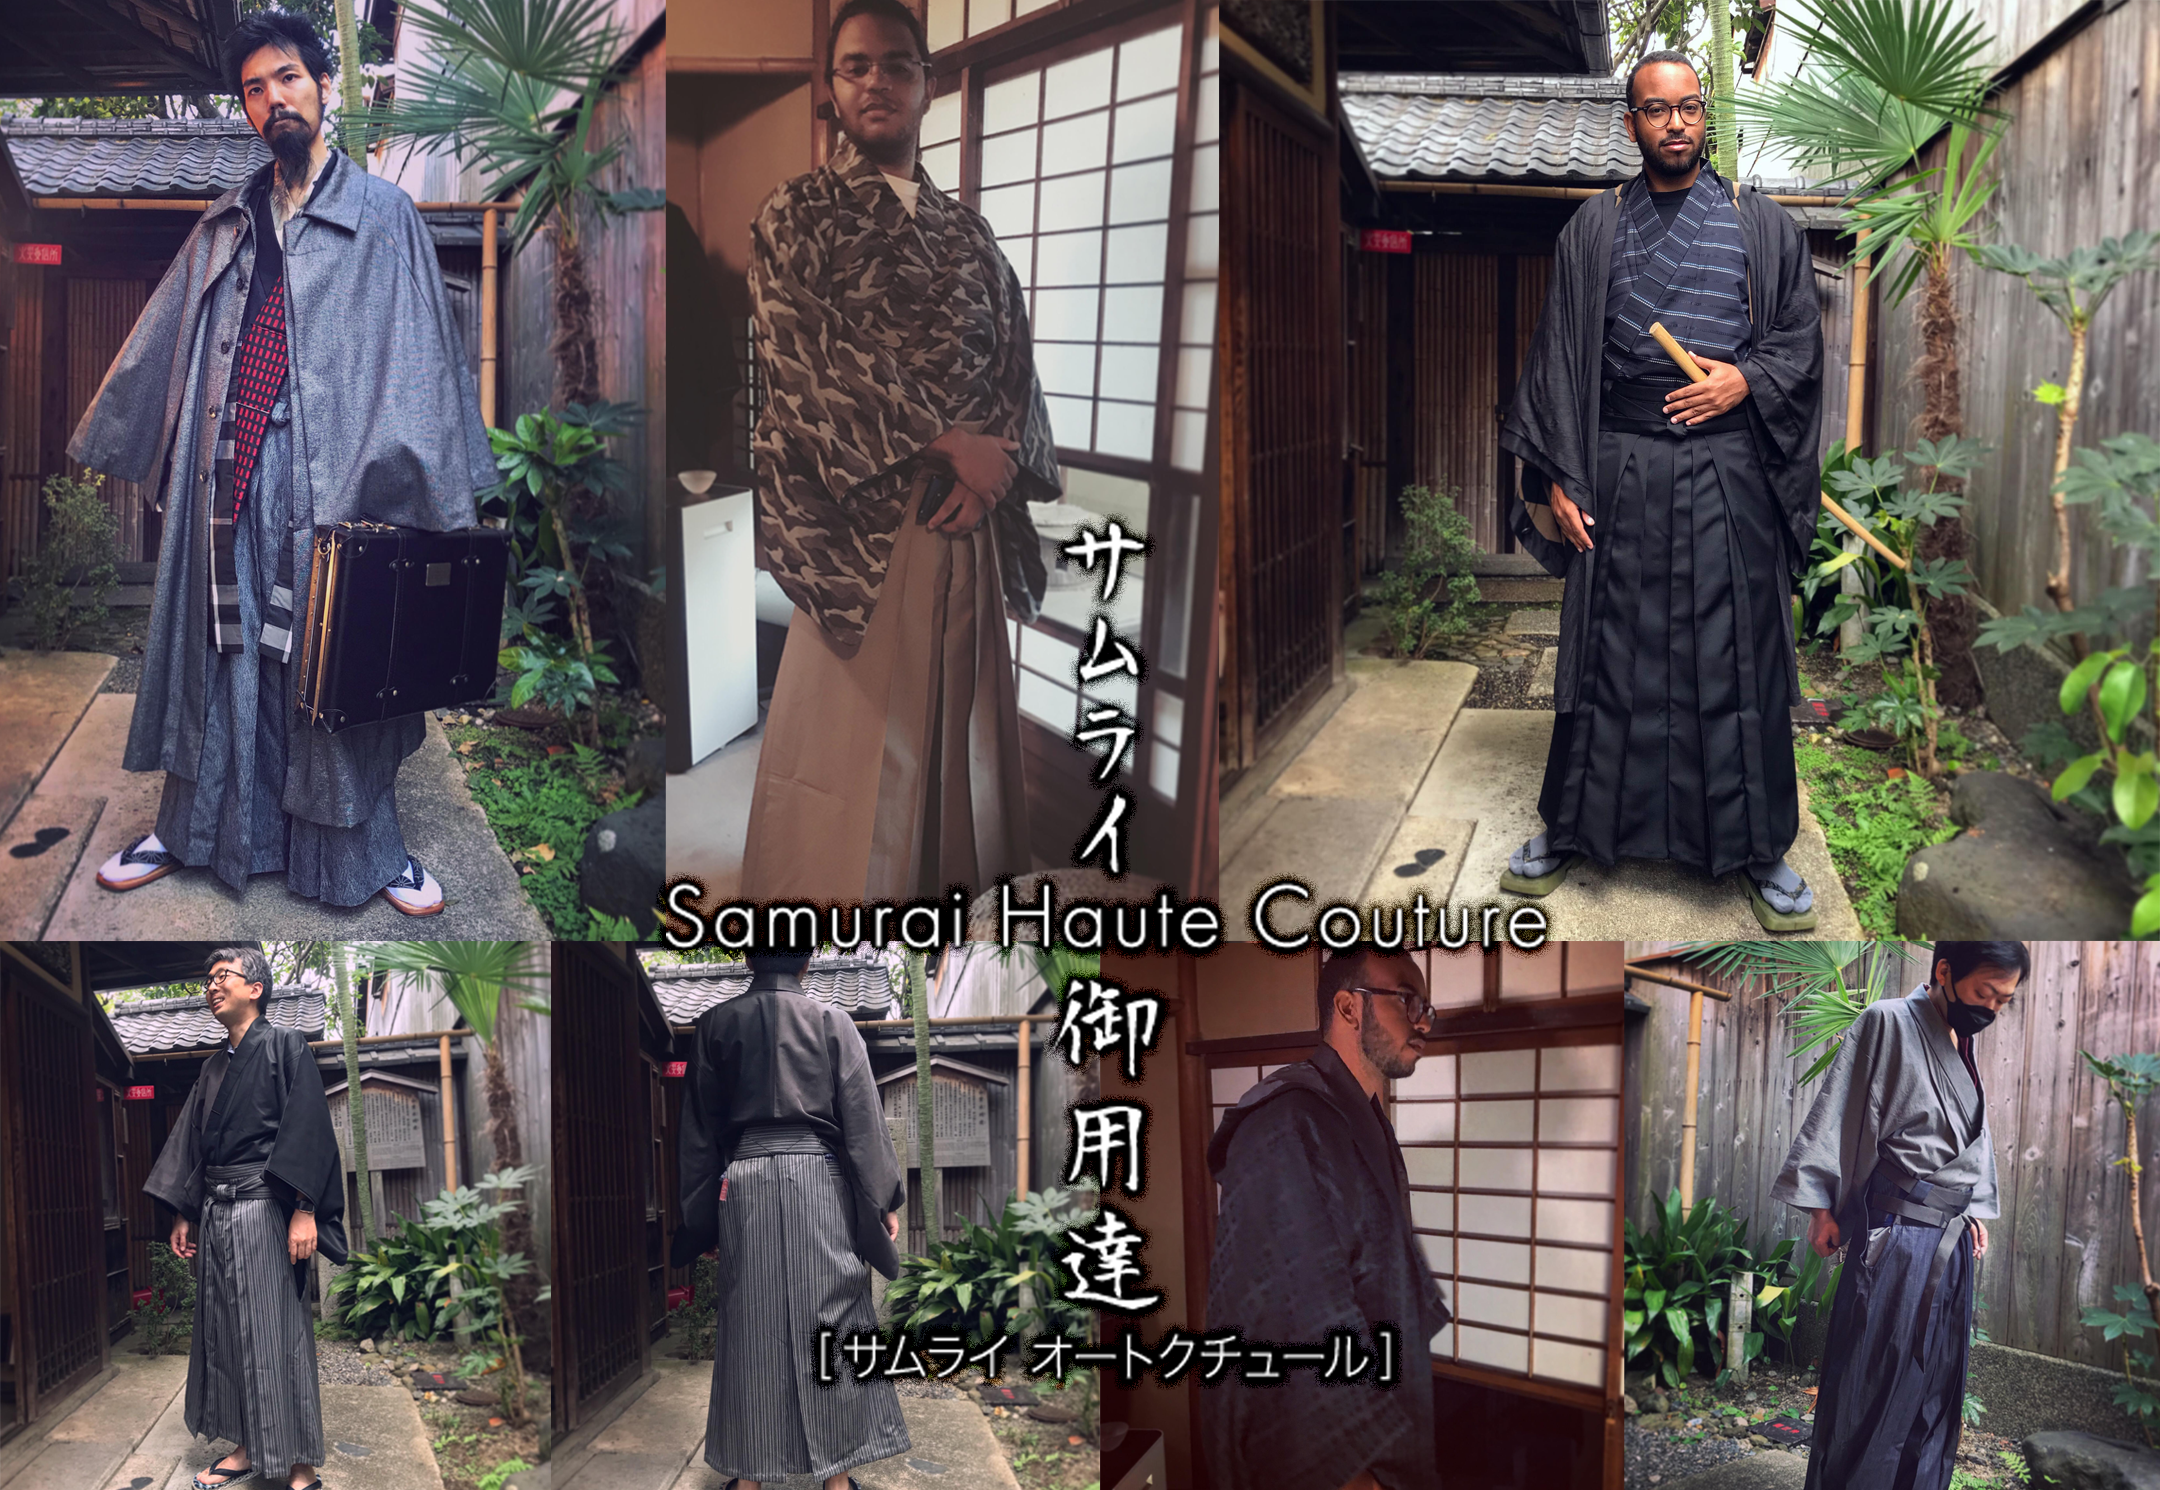 Samurai Haute Couture Exhibition